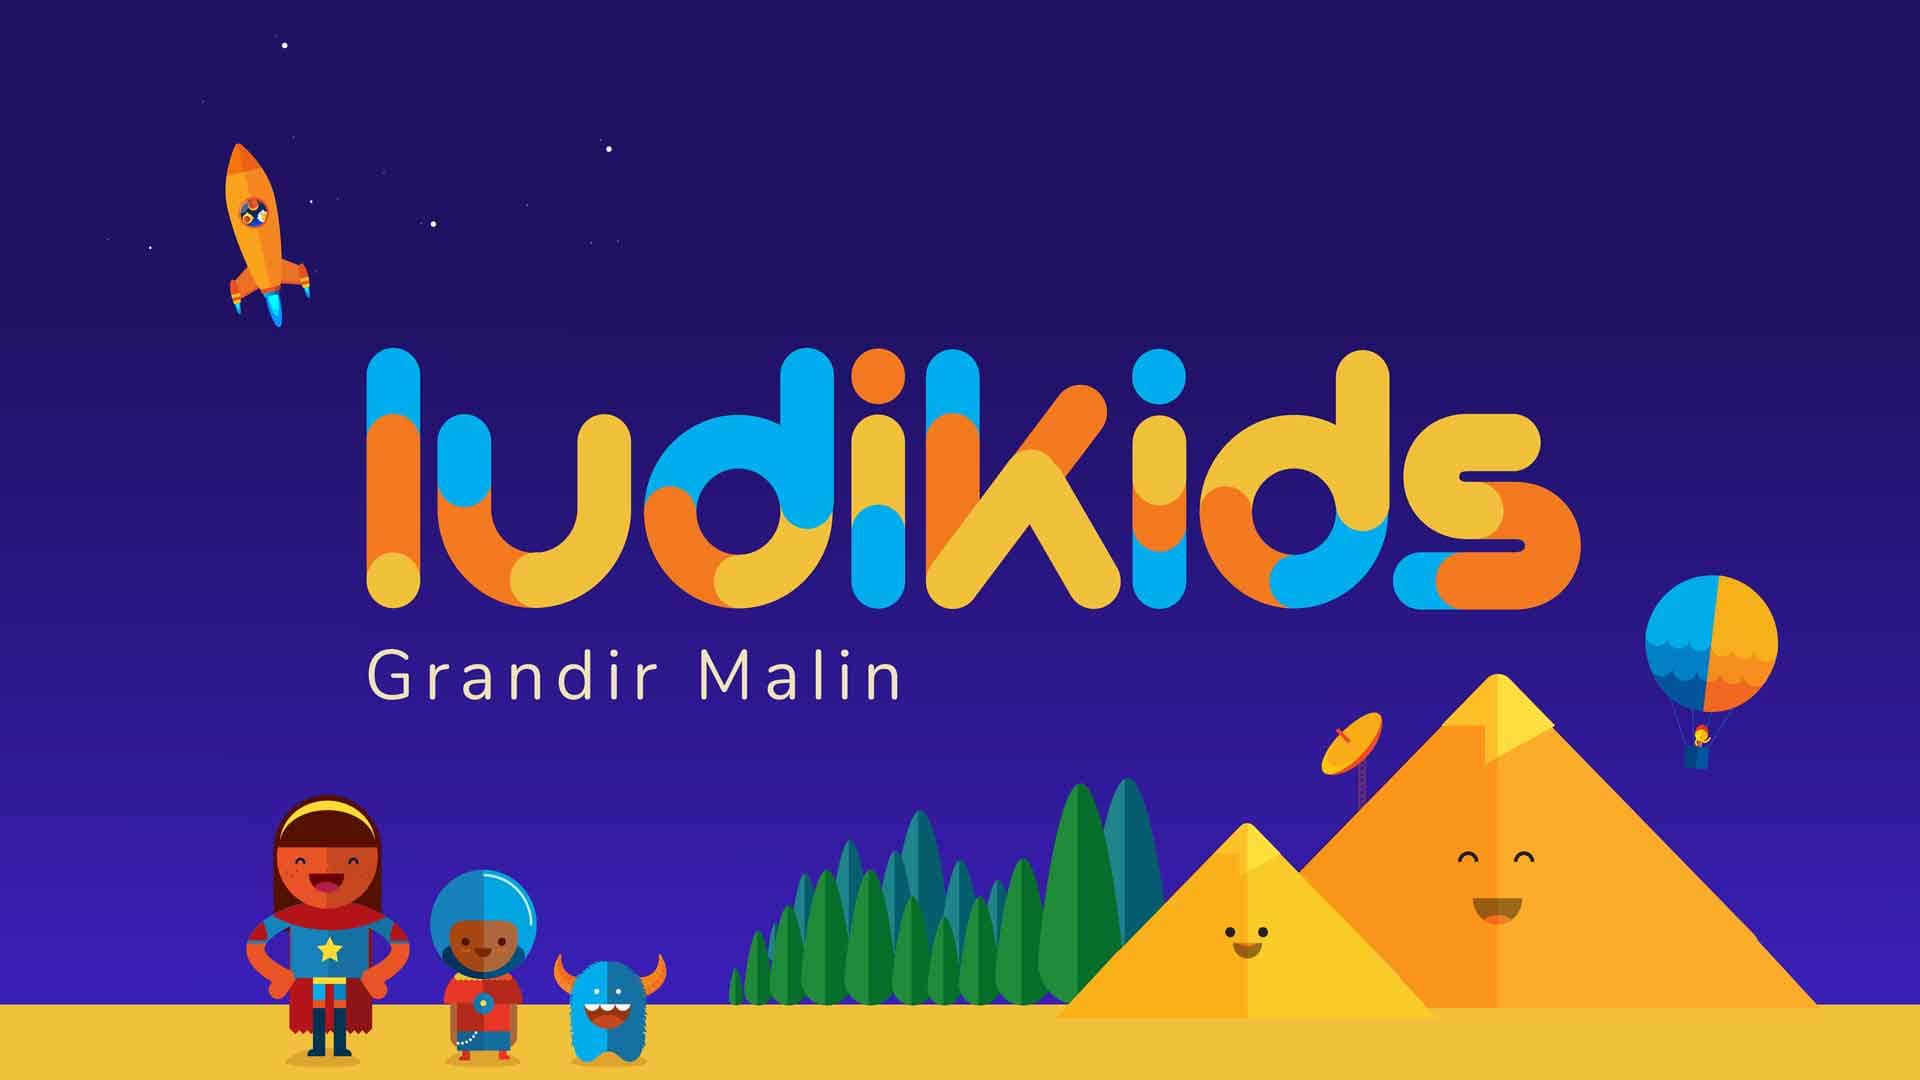 Ludikids logo. cute pyramids in the background